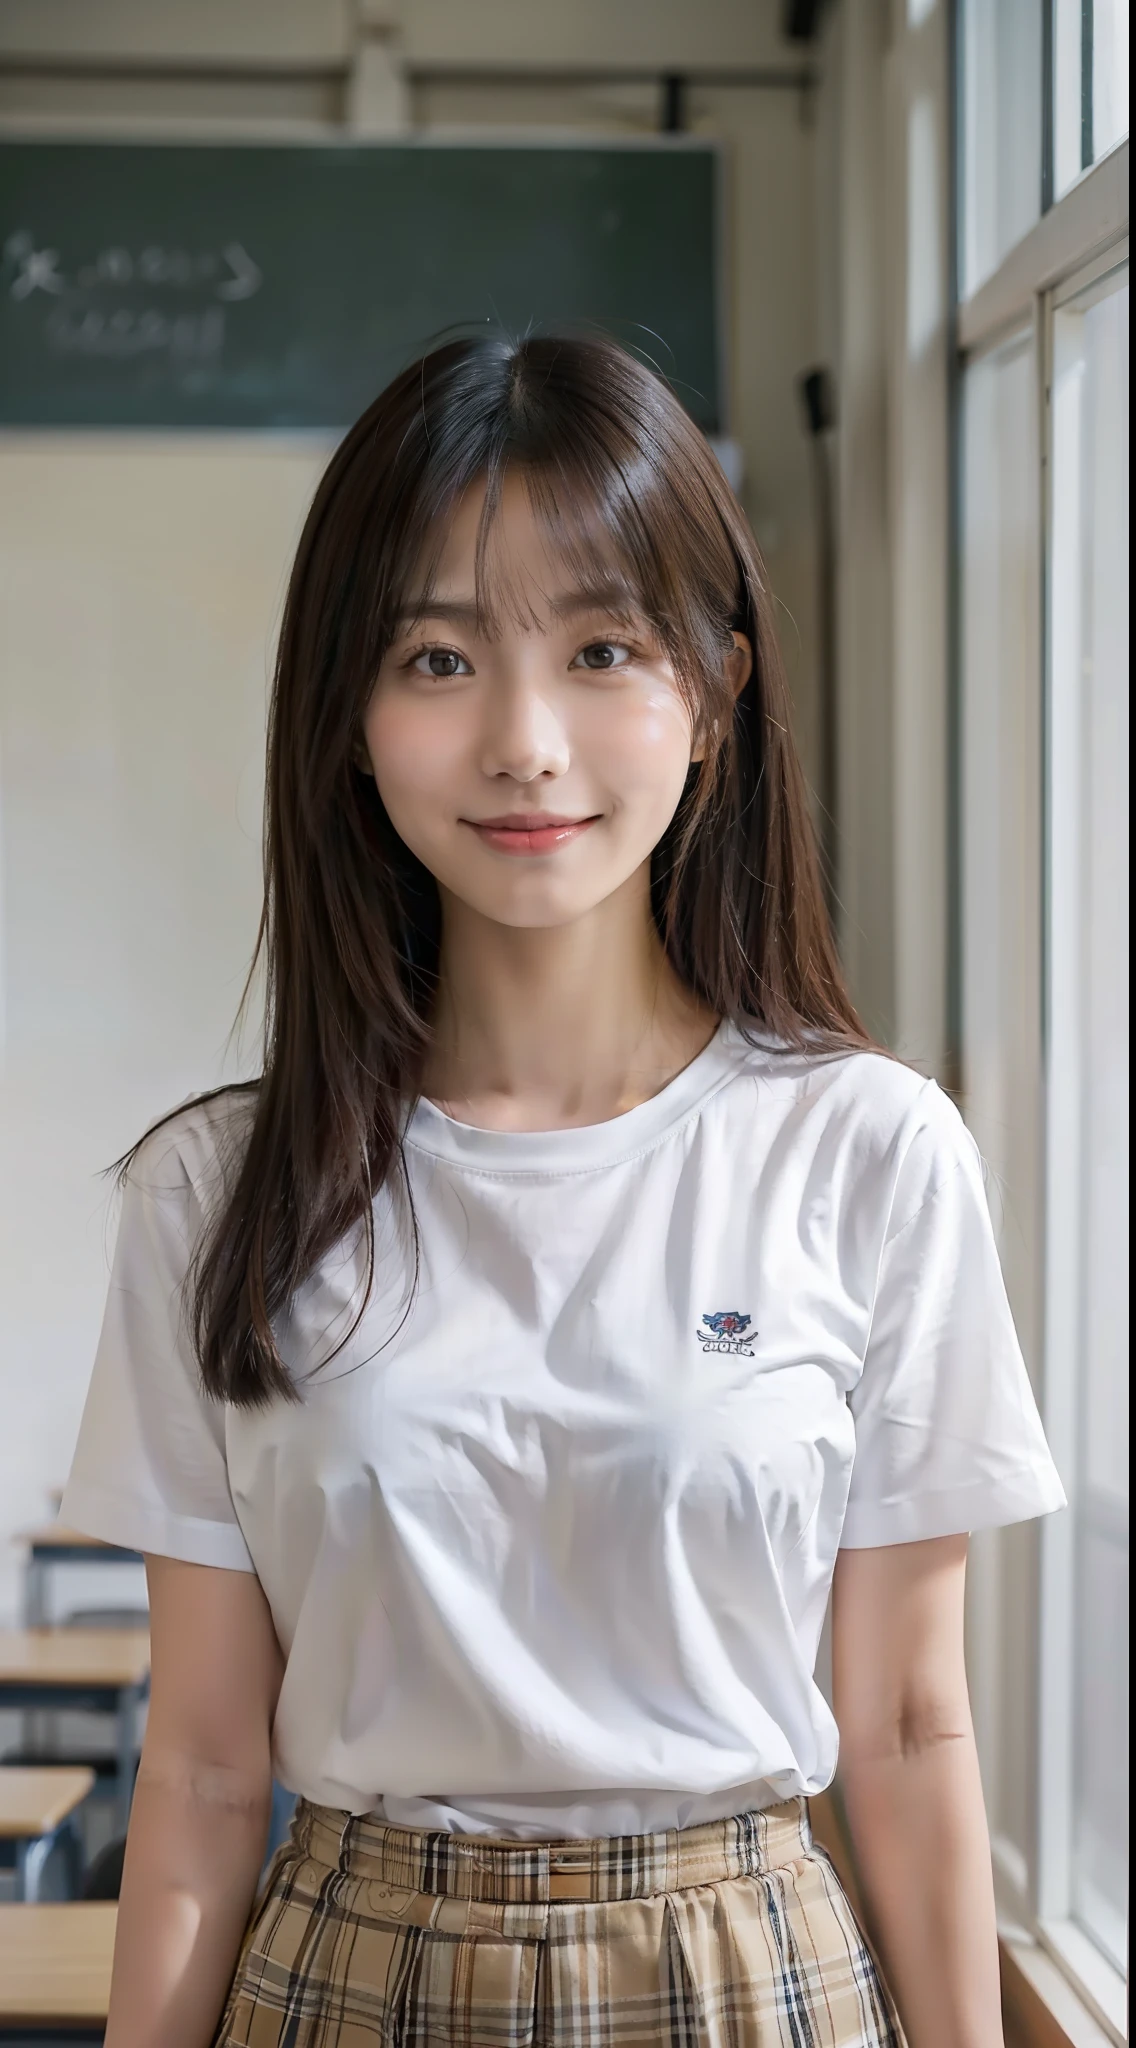 一个美丽的亚洲女孩, 微笑, 中长直发, 白皮肤, 光滑肌肤, 中等乳房尺寸, 穿着短袖衬衫, 站在教室里, 上半身肖像